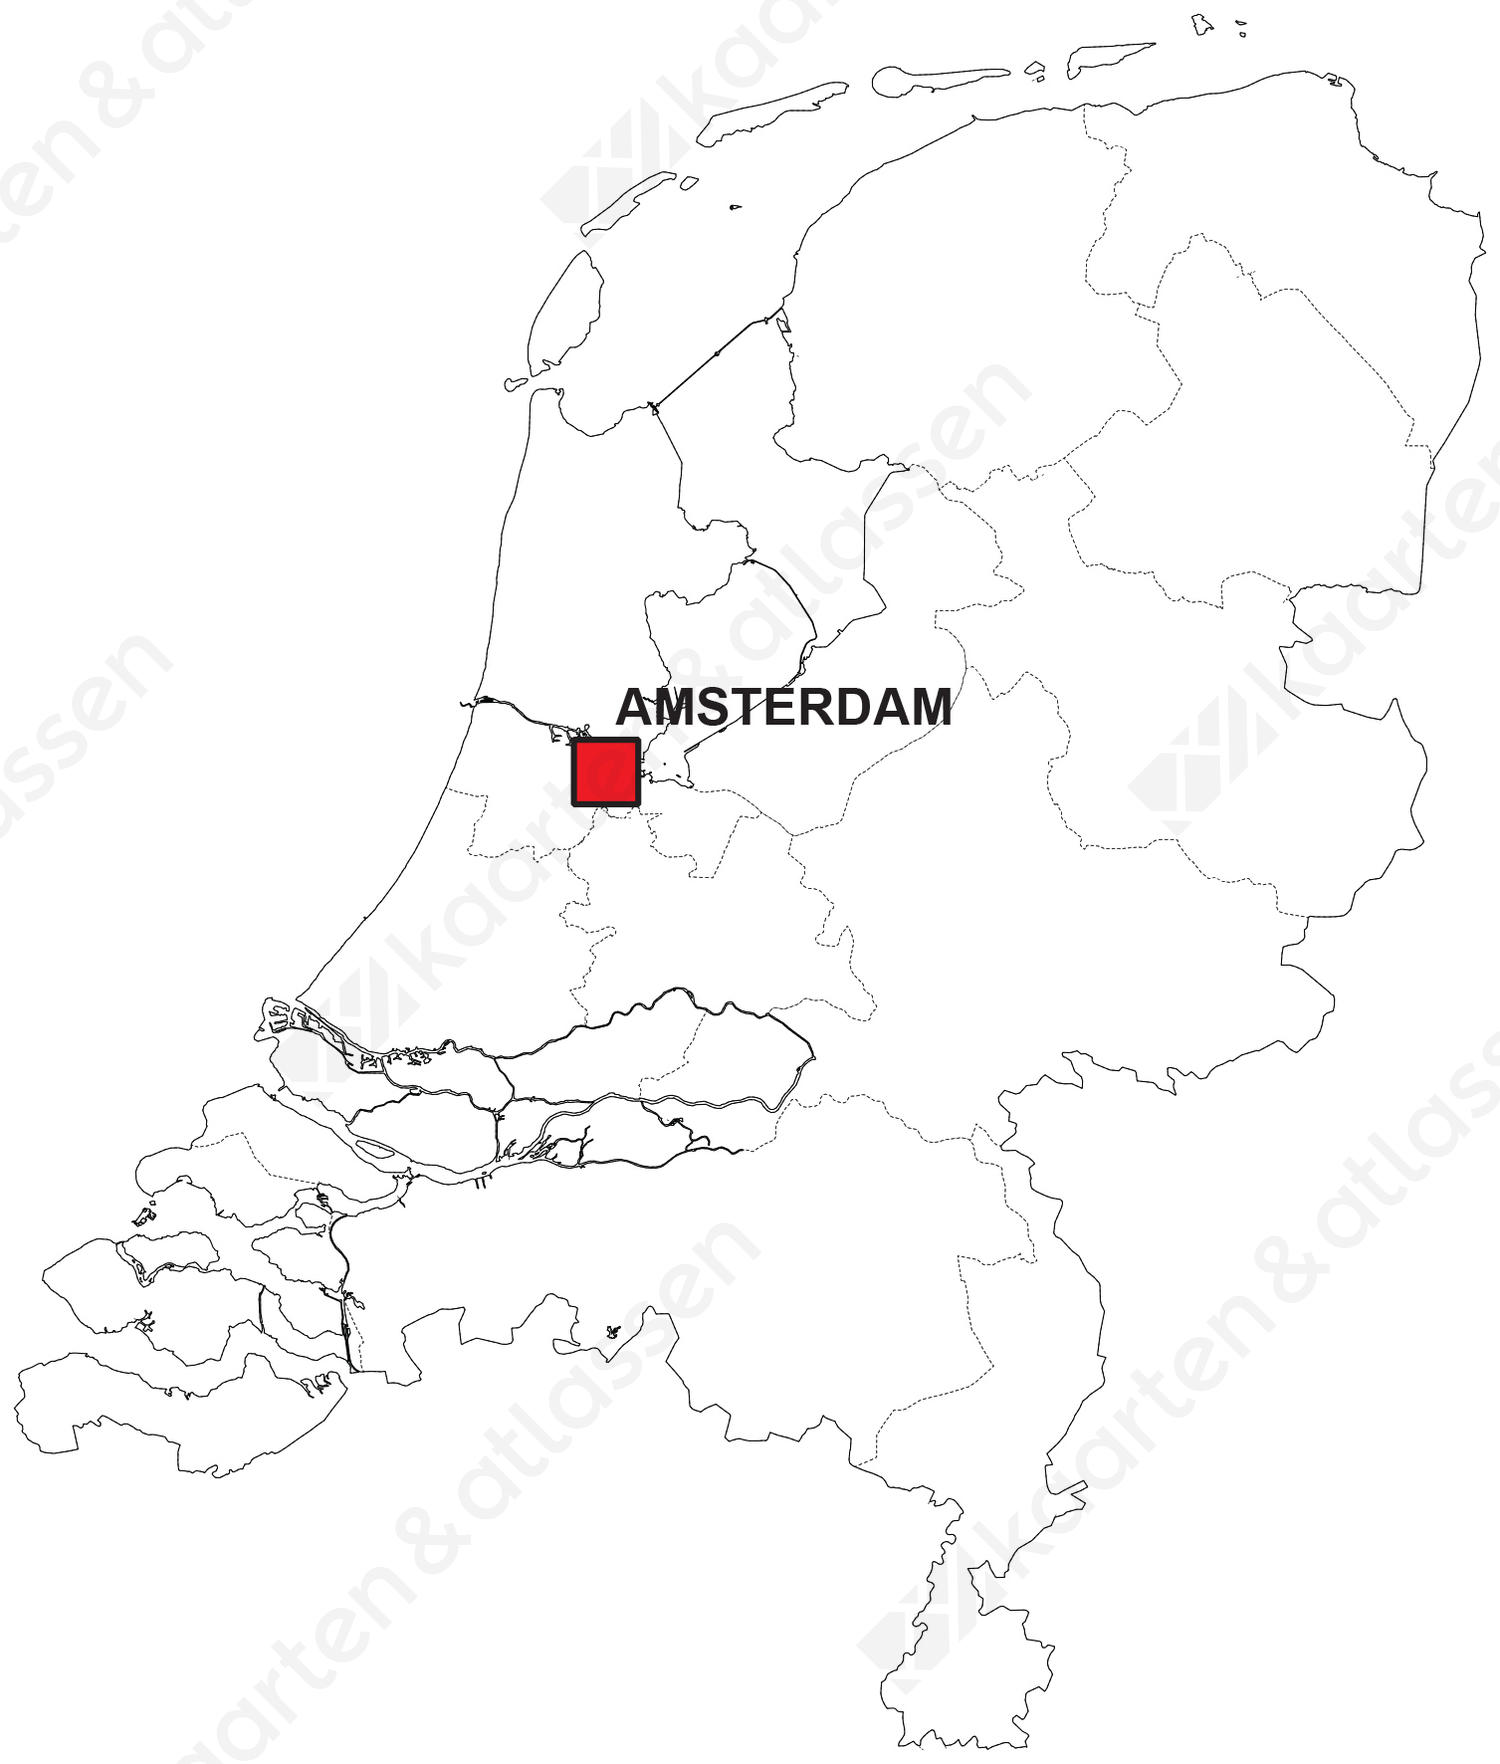 Luchtvaart mechanisch Centimeter Digitale Landkaart van Nederland (gratis) | Kaarten en Atlassen.nl